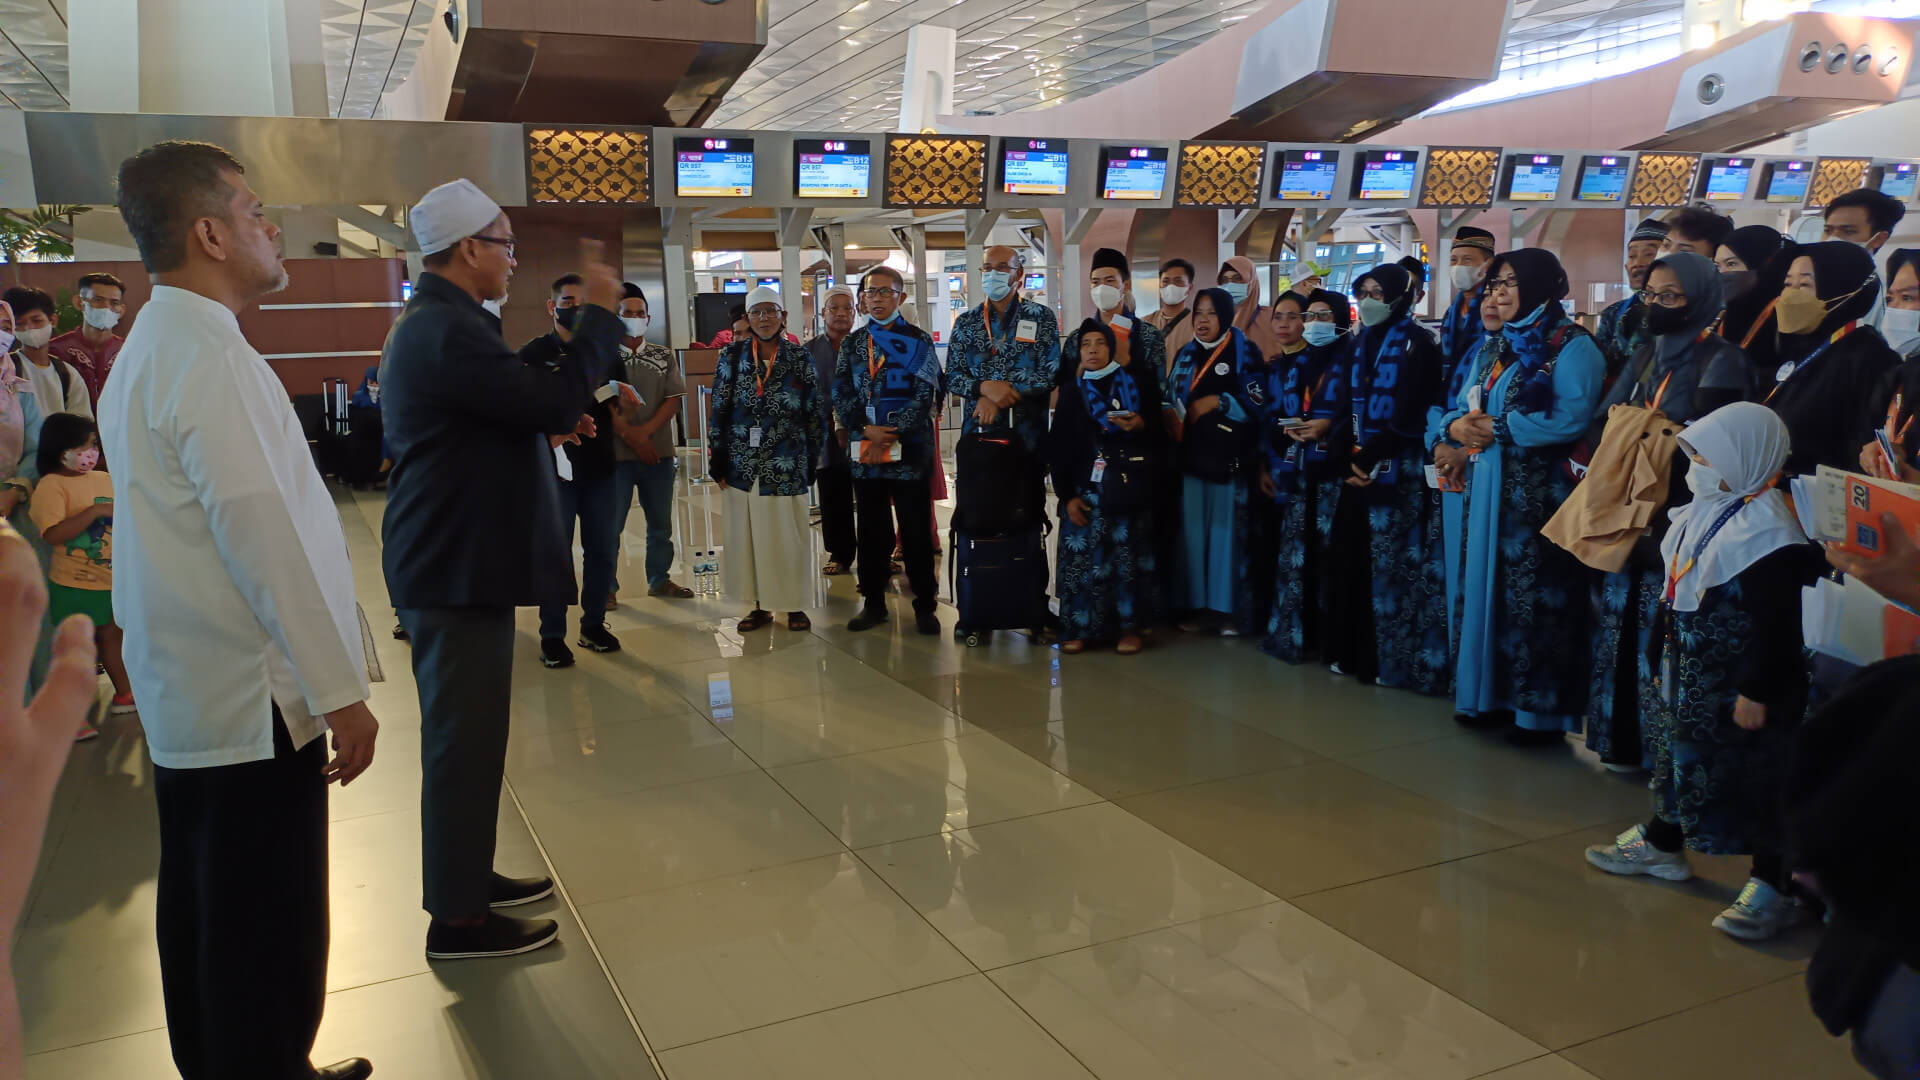 Pengarahan Terakhir Jamaah Umroh oleh Direktur RH Tours Sebelum Keberangkatan di Bandara Internasional Soekarno Hatta Terminal 3 Ultimate